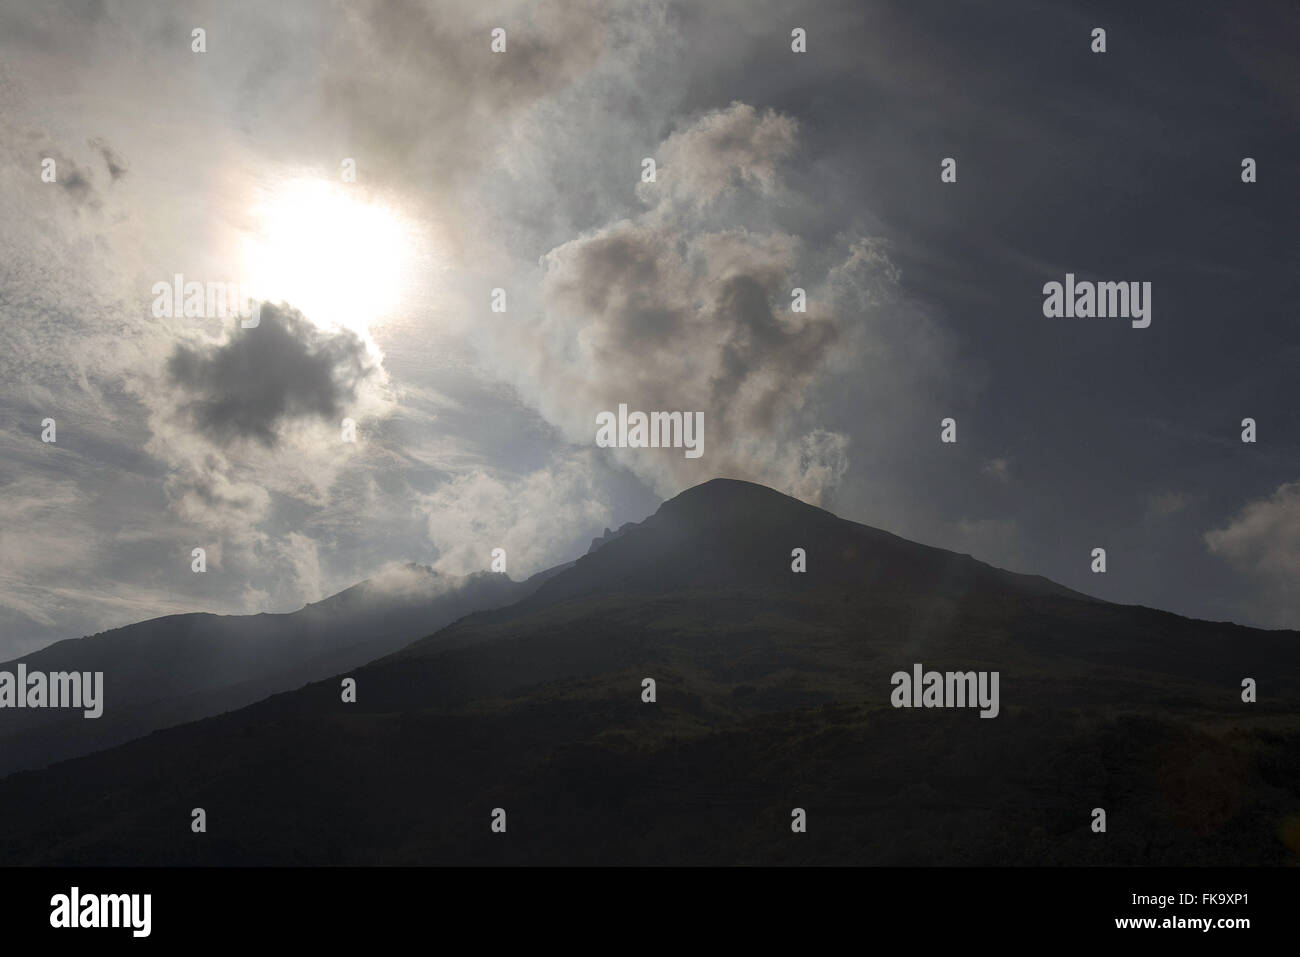 Stronboli Vulkan Tätigkeit seit mehr als 2000 Jahren - Äolischen Inseln Stockfoto